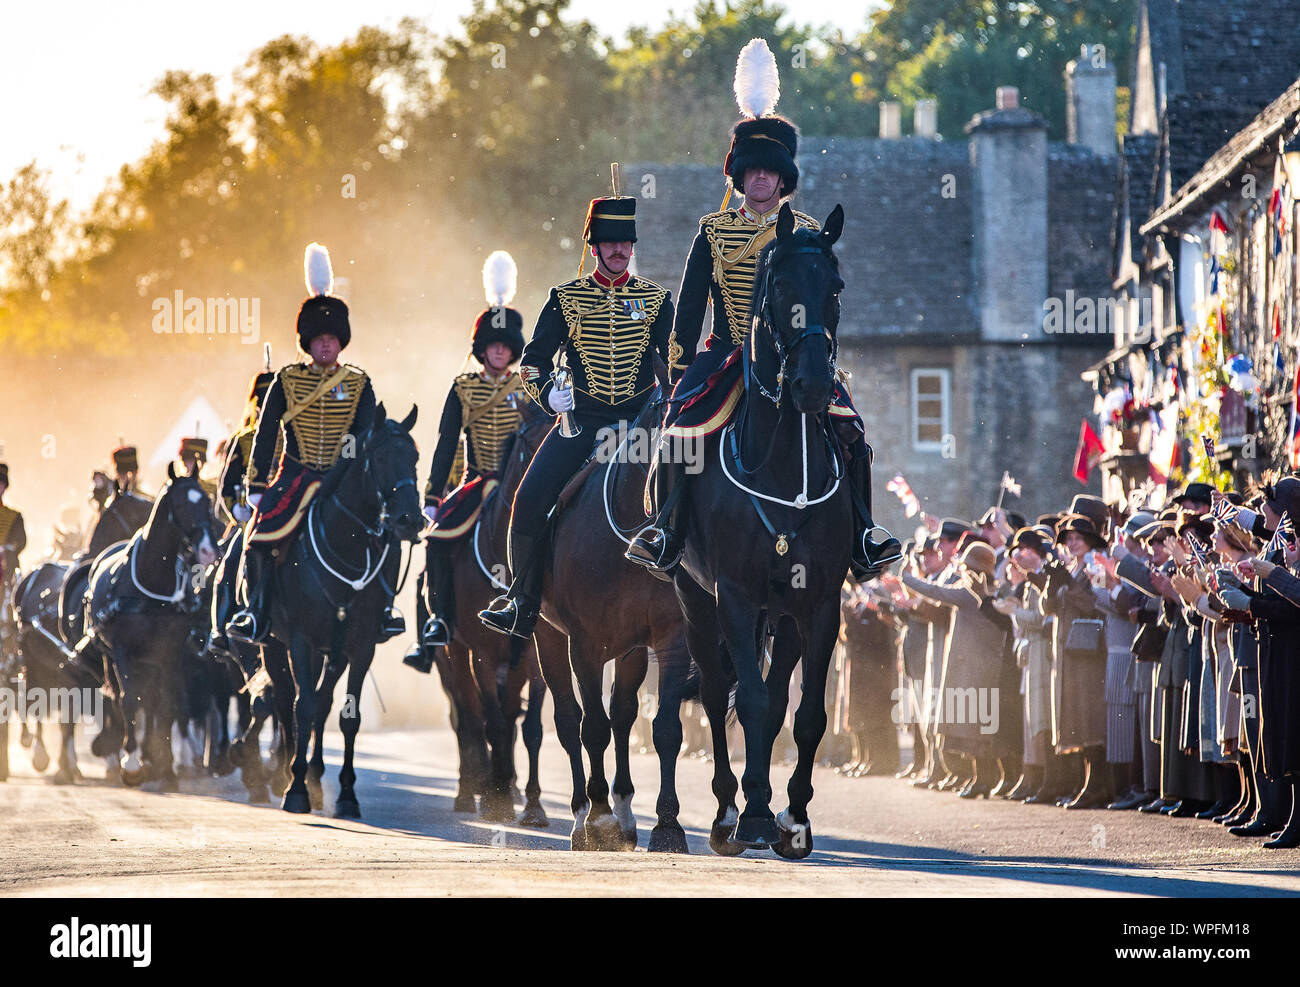 La troupe Kings Royal Horse Artillery pendant le tournage d'un film de smash TV tapez Downton Abbey pour le cinéma. La scène a été tourné dans le haut St le National Trust village de Lacock dans le Wiltshire avec 80 chevaux et d'armes à feu et plus de 250 figurants acclamations et agitaient des drapeaux comme la parade passée. Banque D'Images